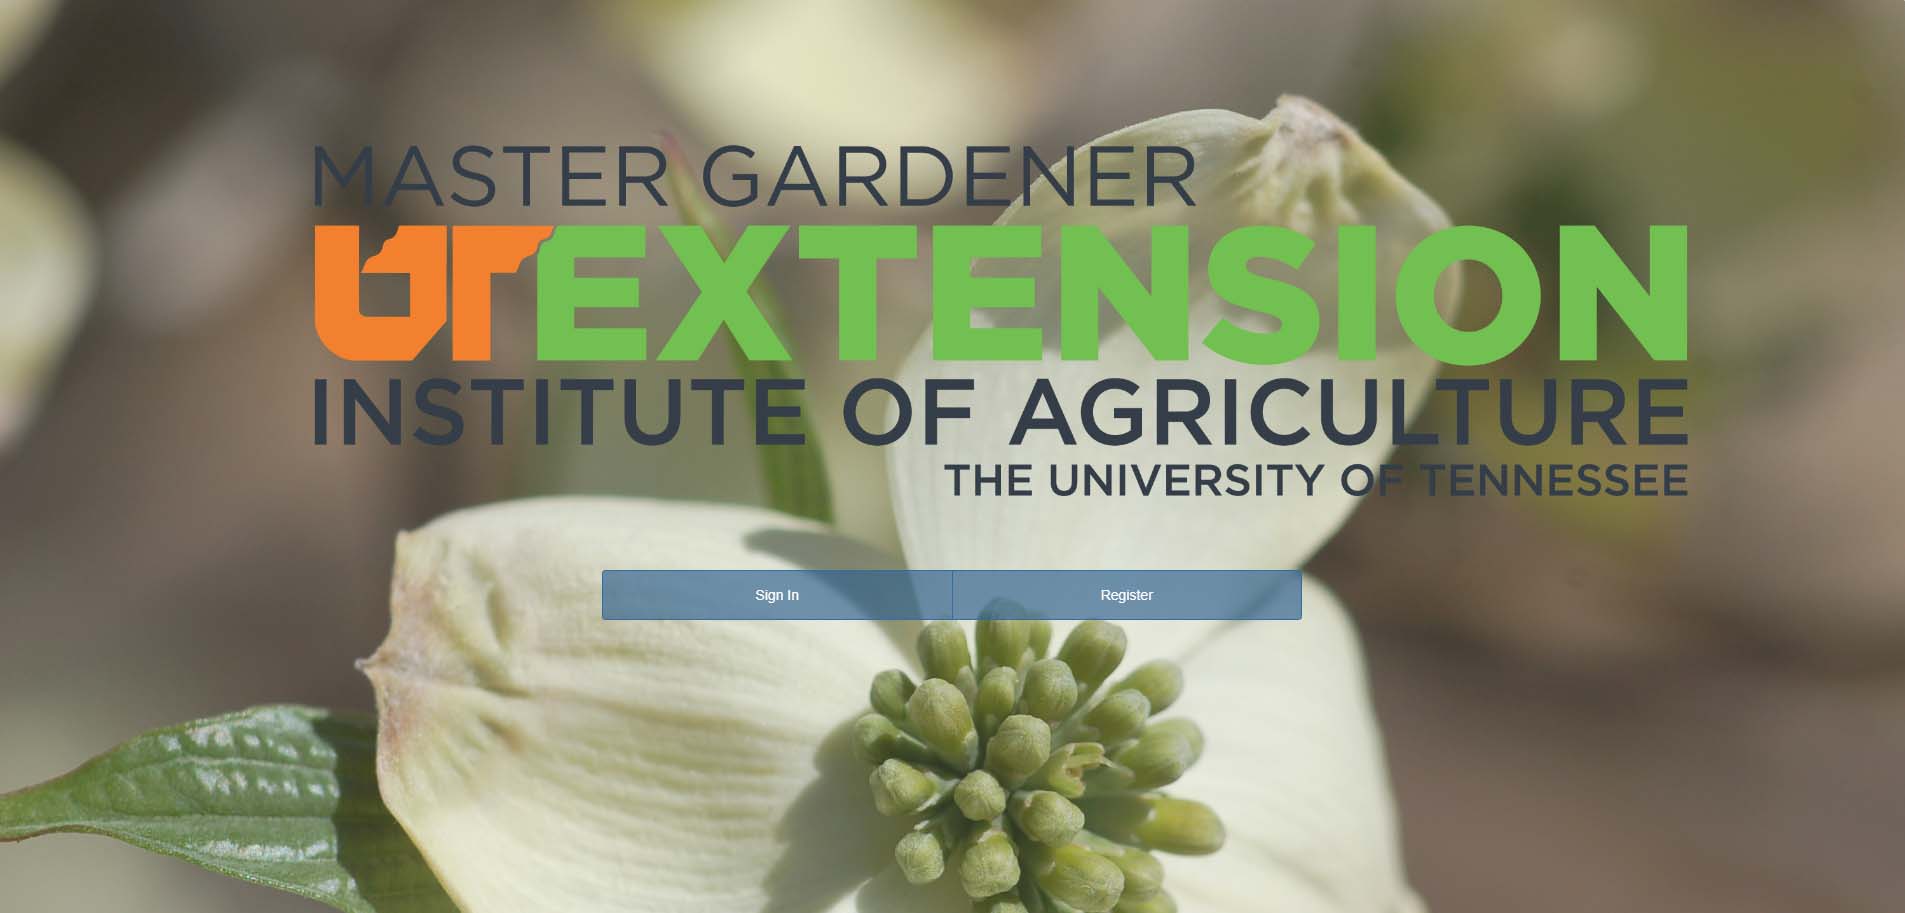 TN Master Gardener Handbook